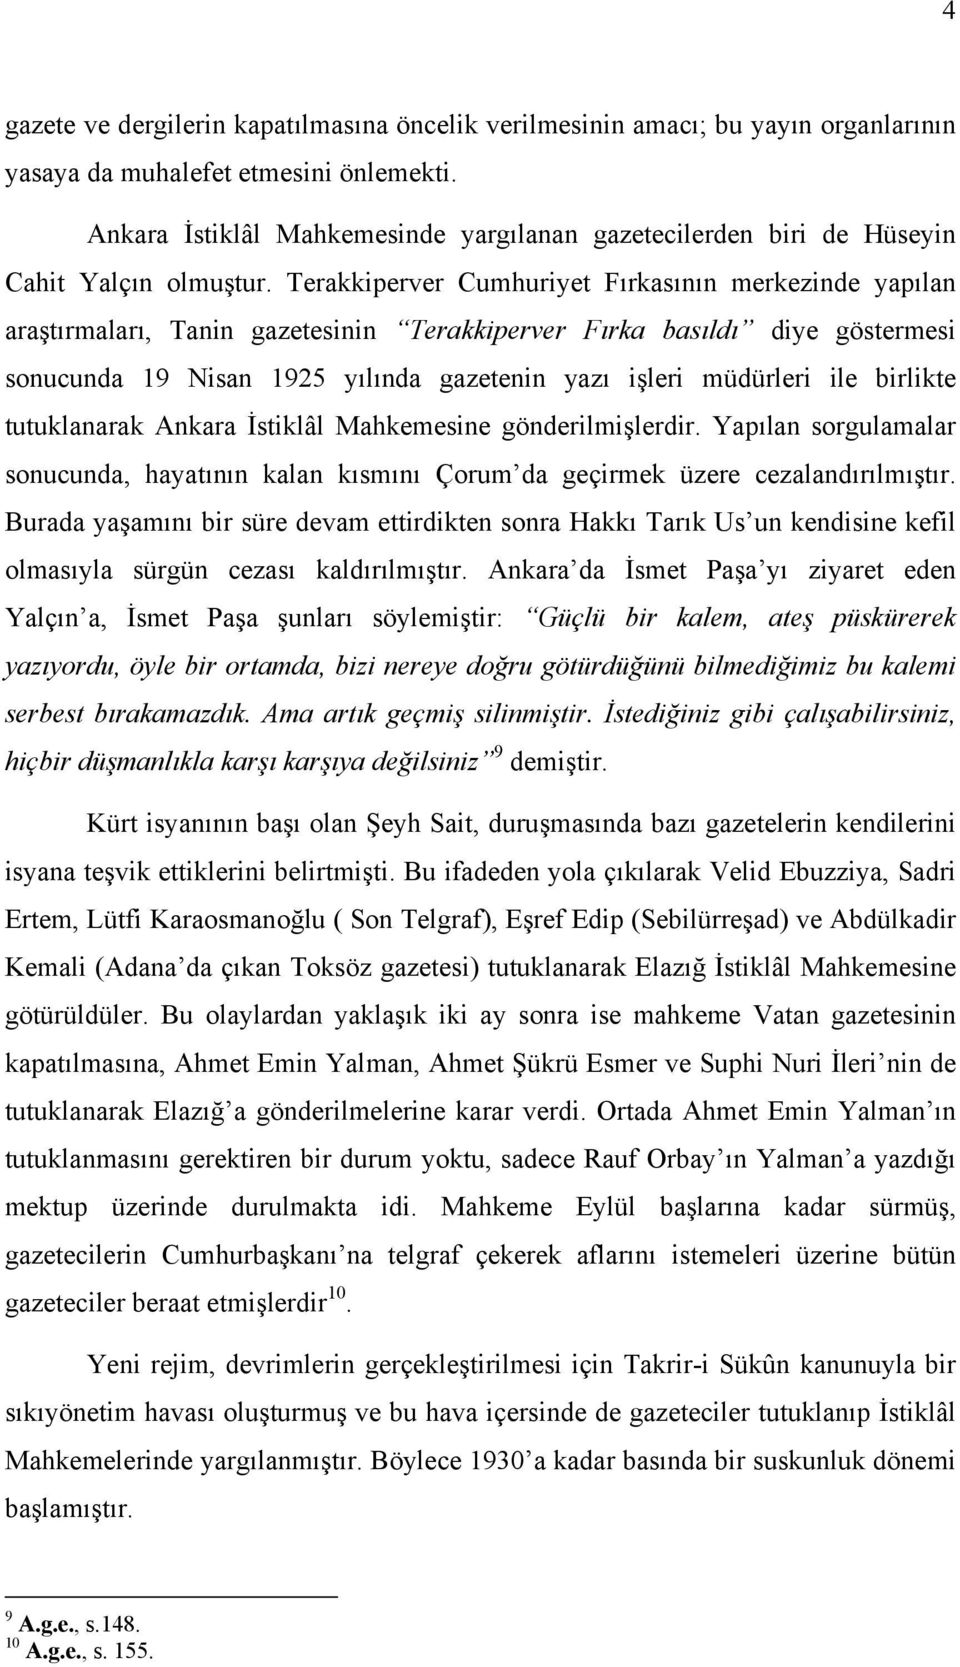 Terakkiperver Cumhuriyet Fırkasının merkezinde yapılan araştırmaları, Tanin gazetesinin Terakkiperver Fırka basıldı diye göstermesi sonucunda 19 Nisan 1925 yılında gazetenin yazı işleri müdürleri ile